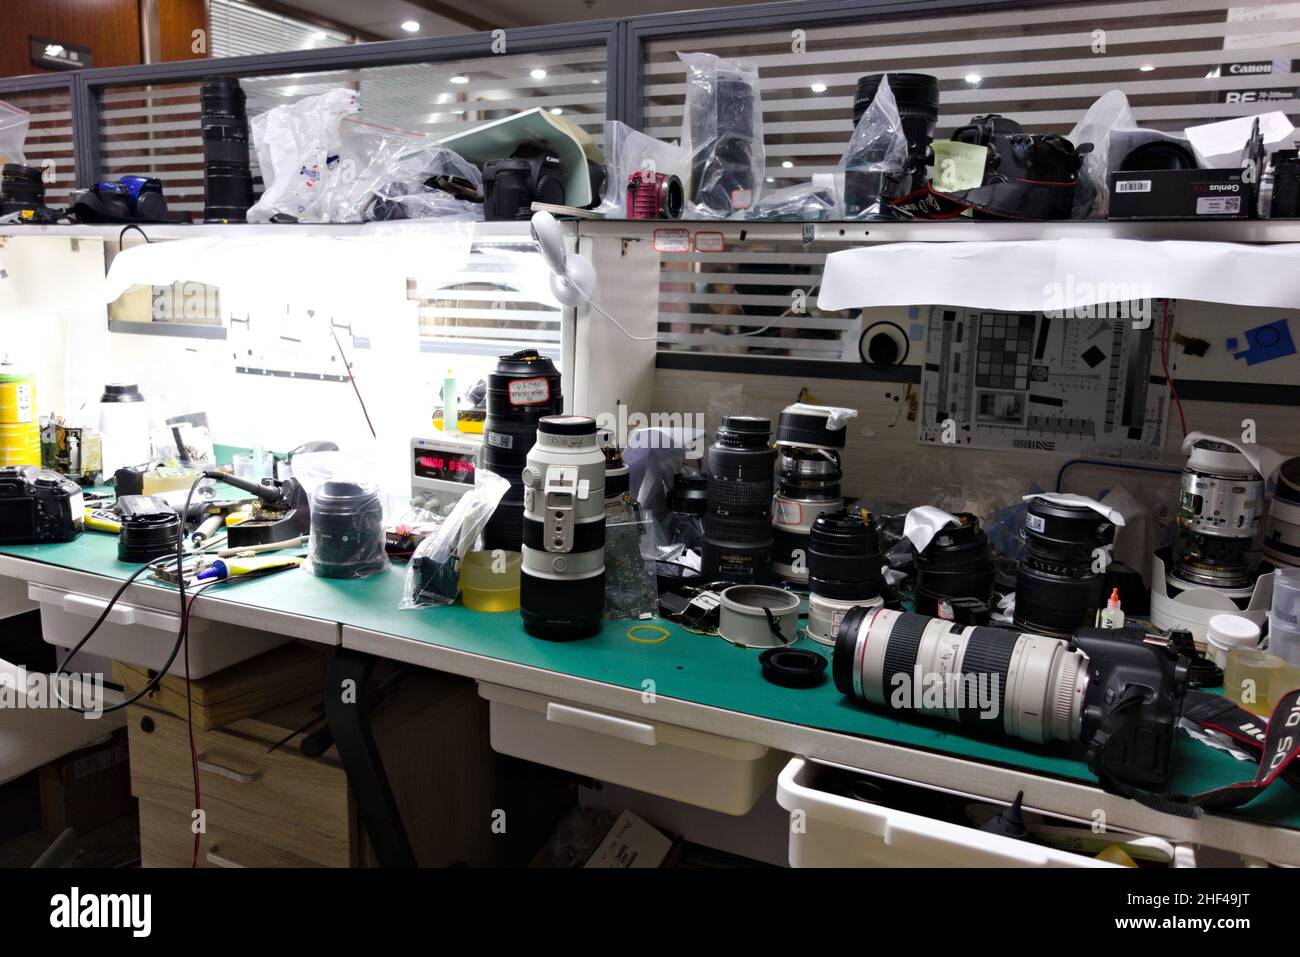 Stazione di lavoro per la riparazione di telecamere e obiettivi con apparecchiature e strumenti Foto Stock